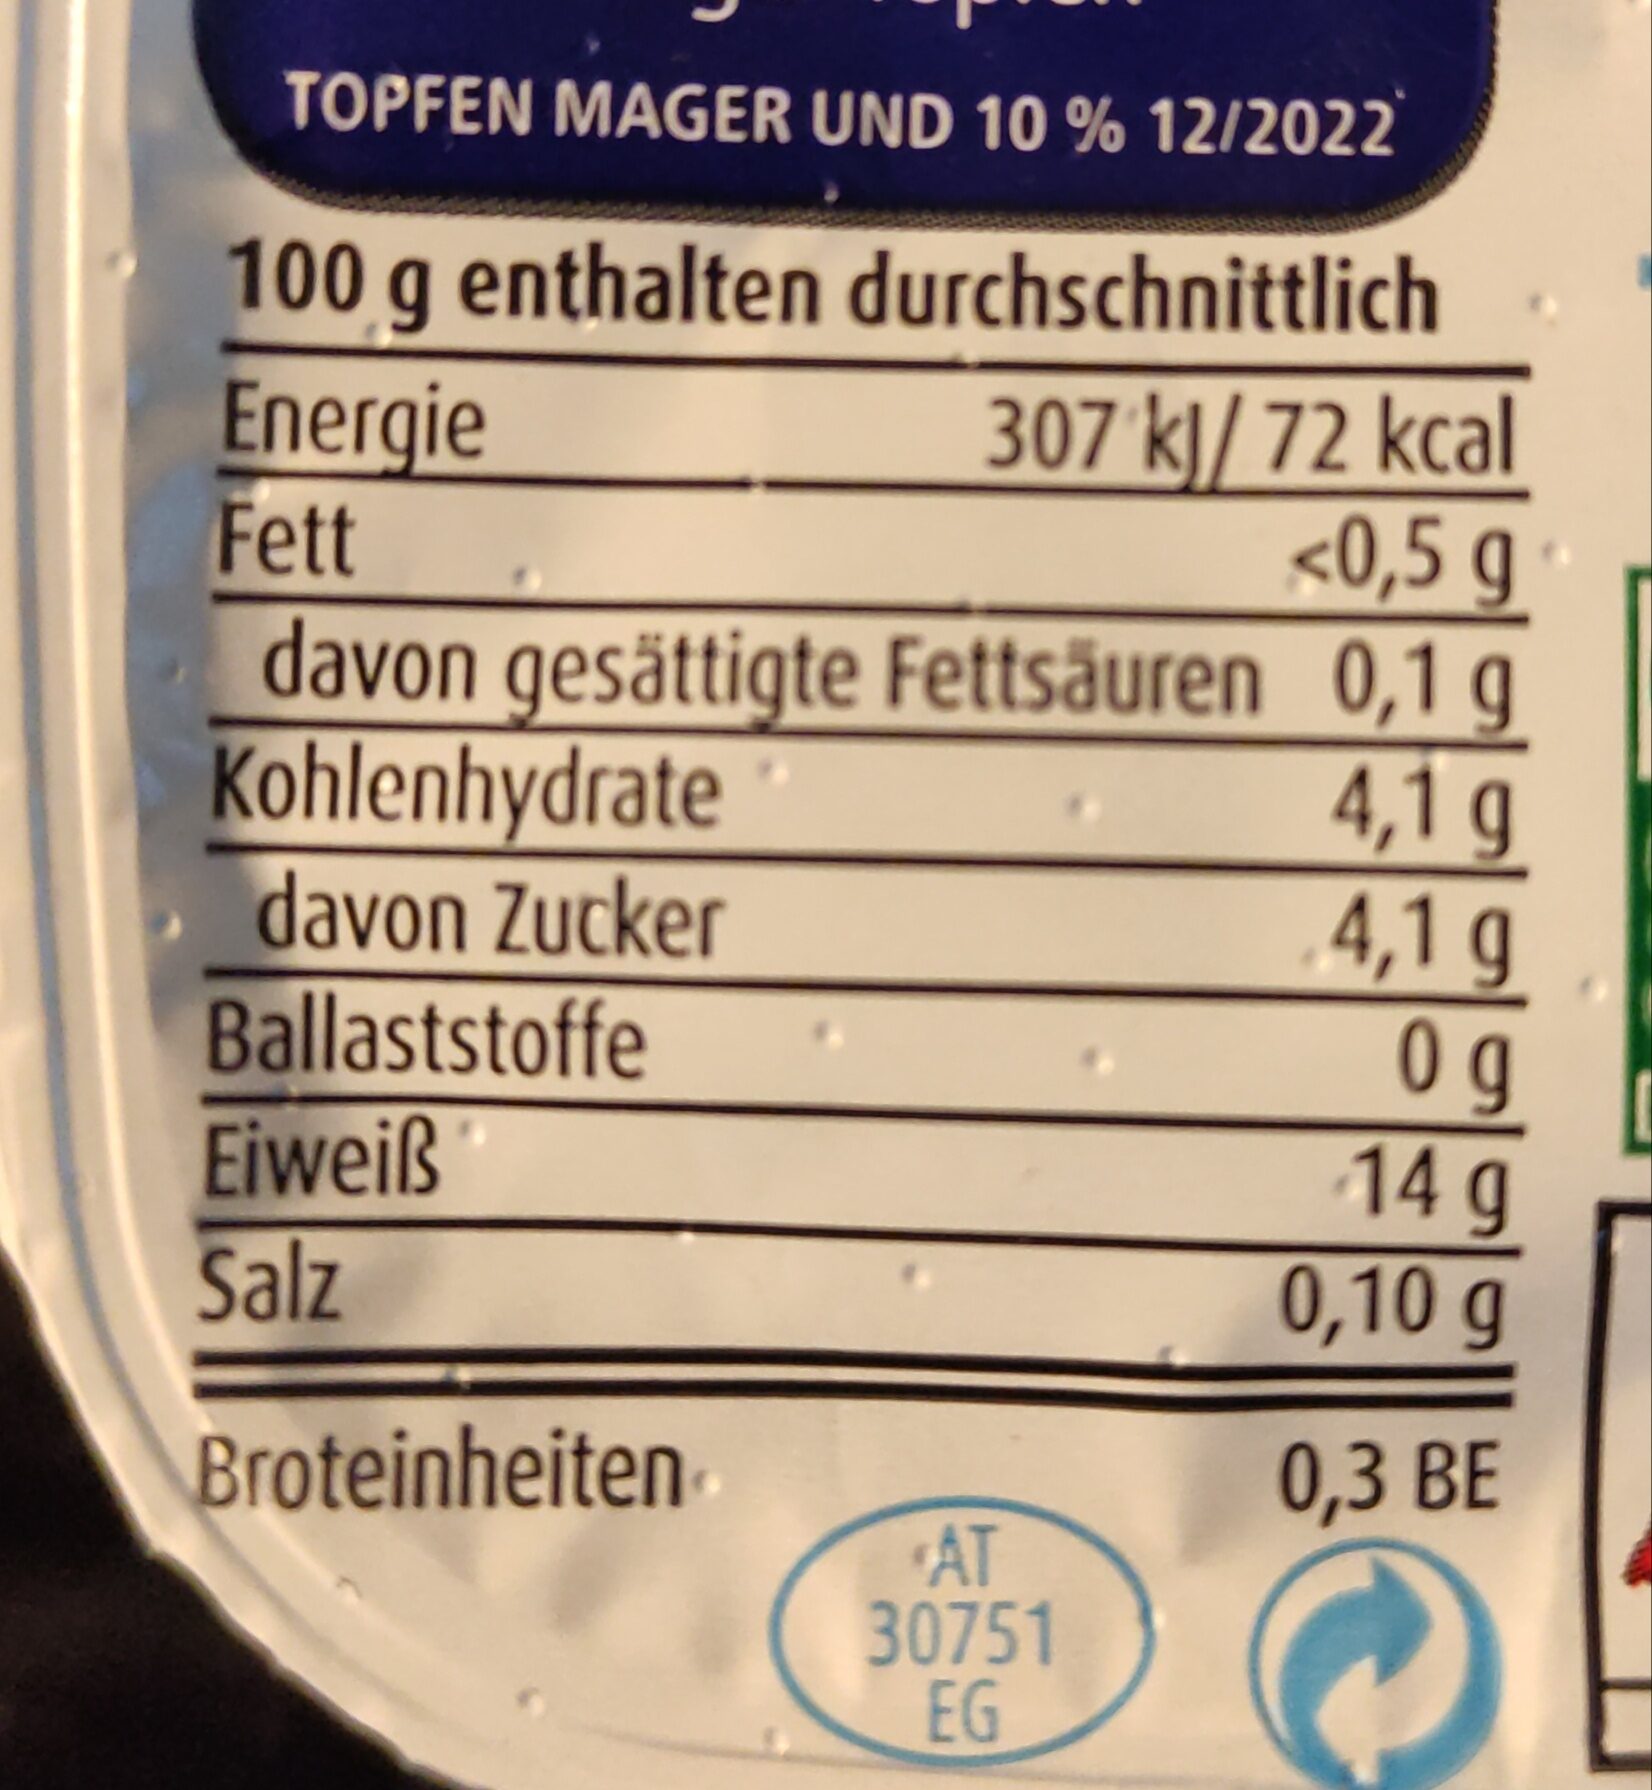 Spar Mager Topfen - Nutrition facts - de